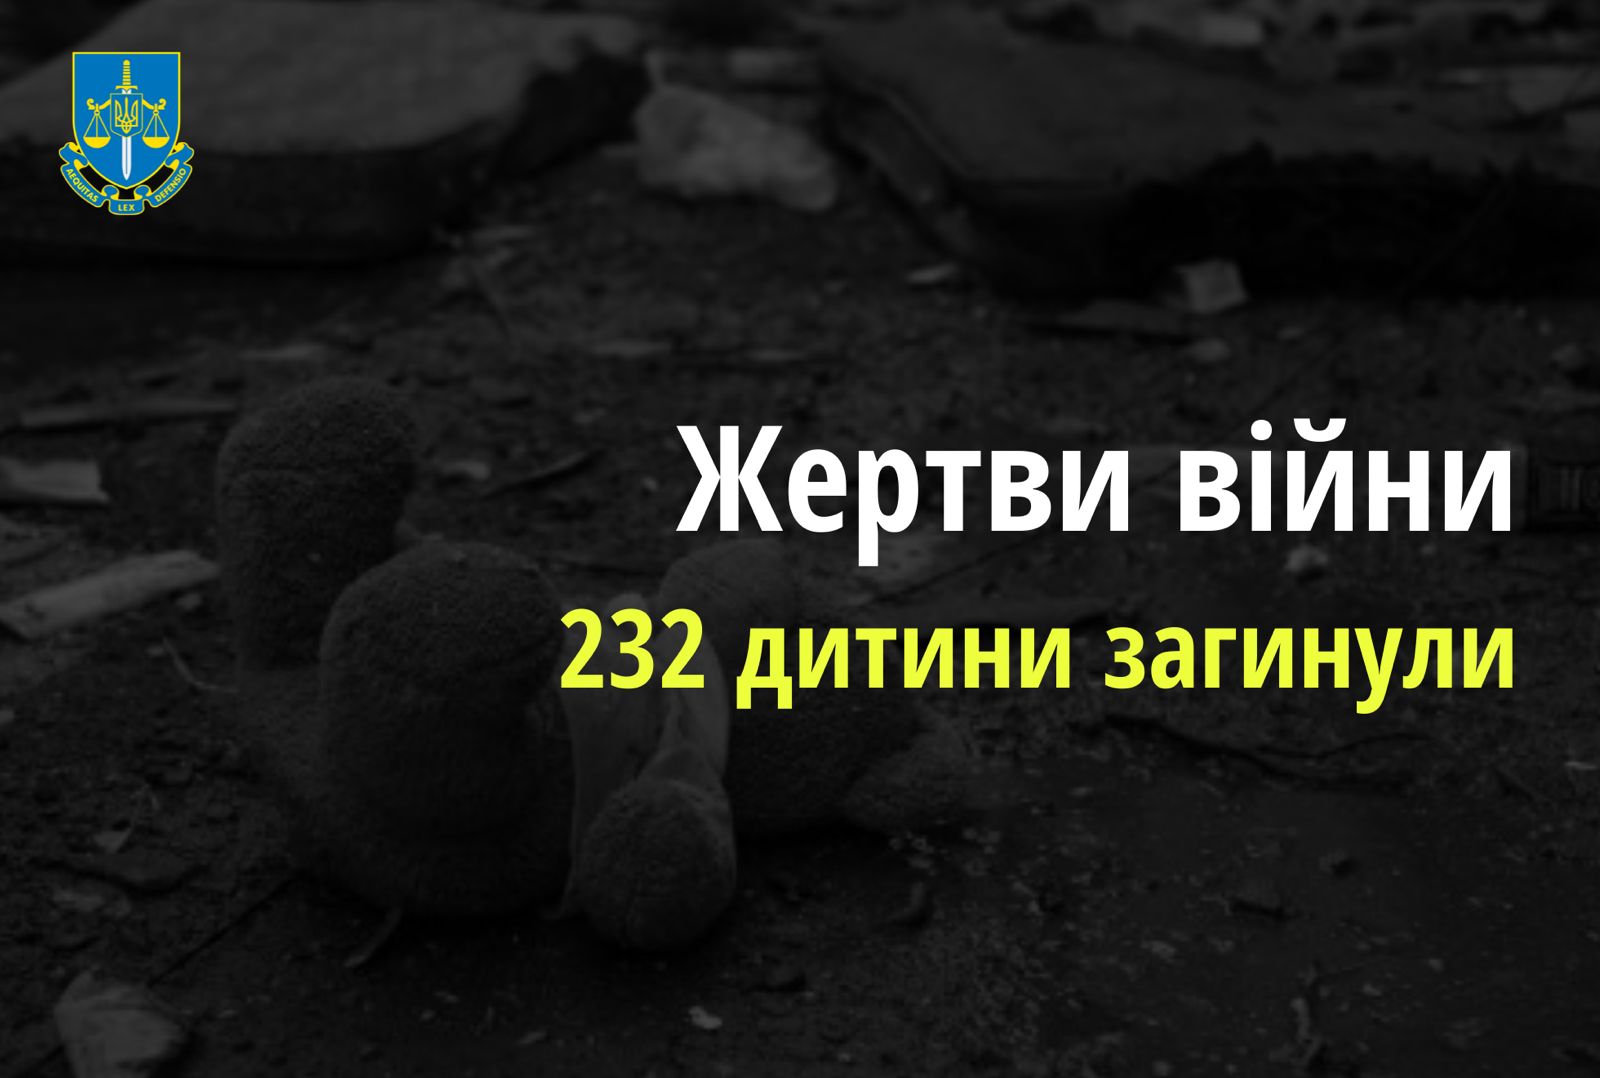 Ювенальні прокурори: внаслідок збройної агресії РФ в Україні загинули 232 дитини